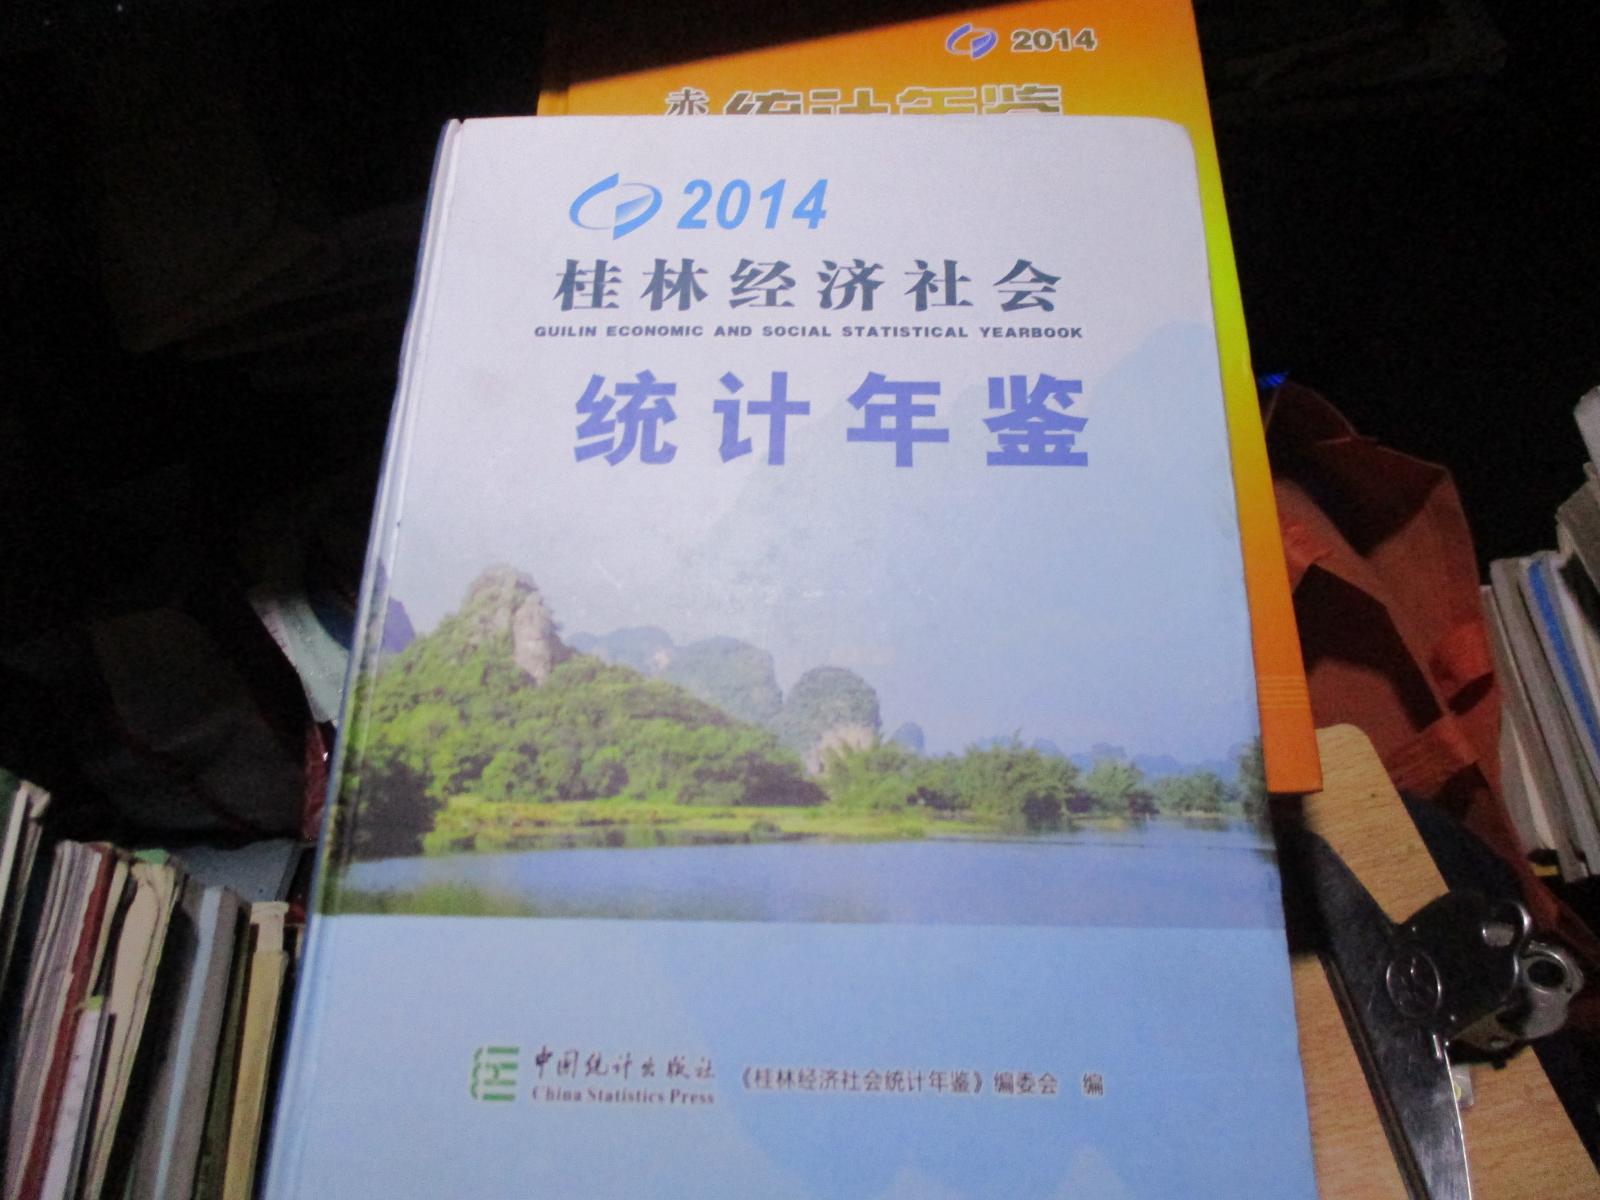 桂林经济社会统计年鉴 2014